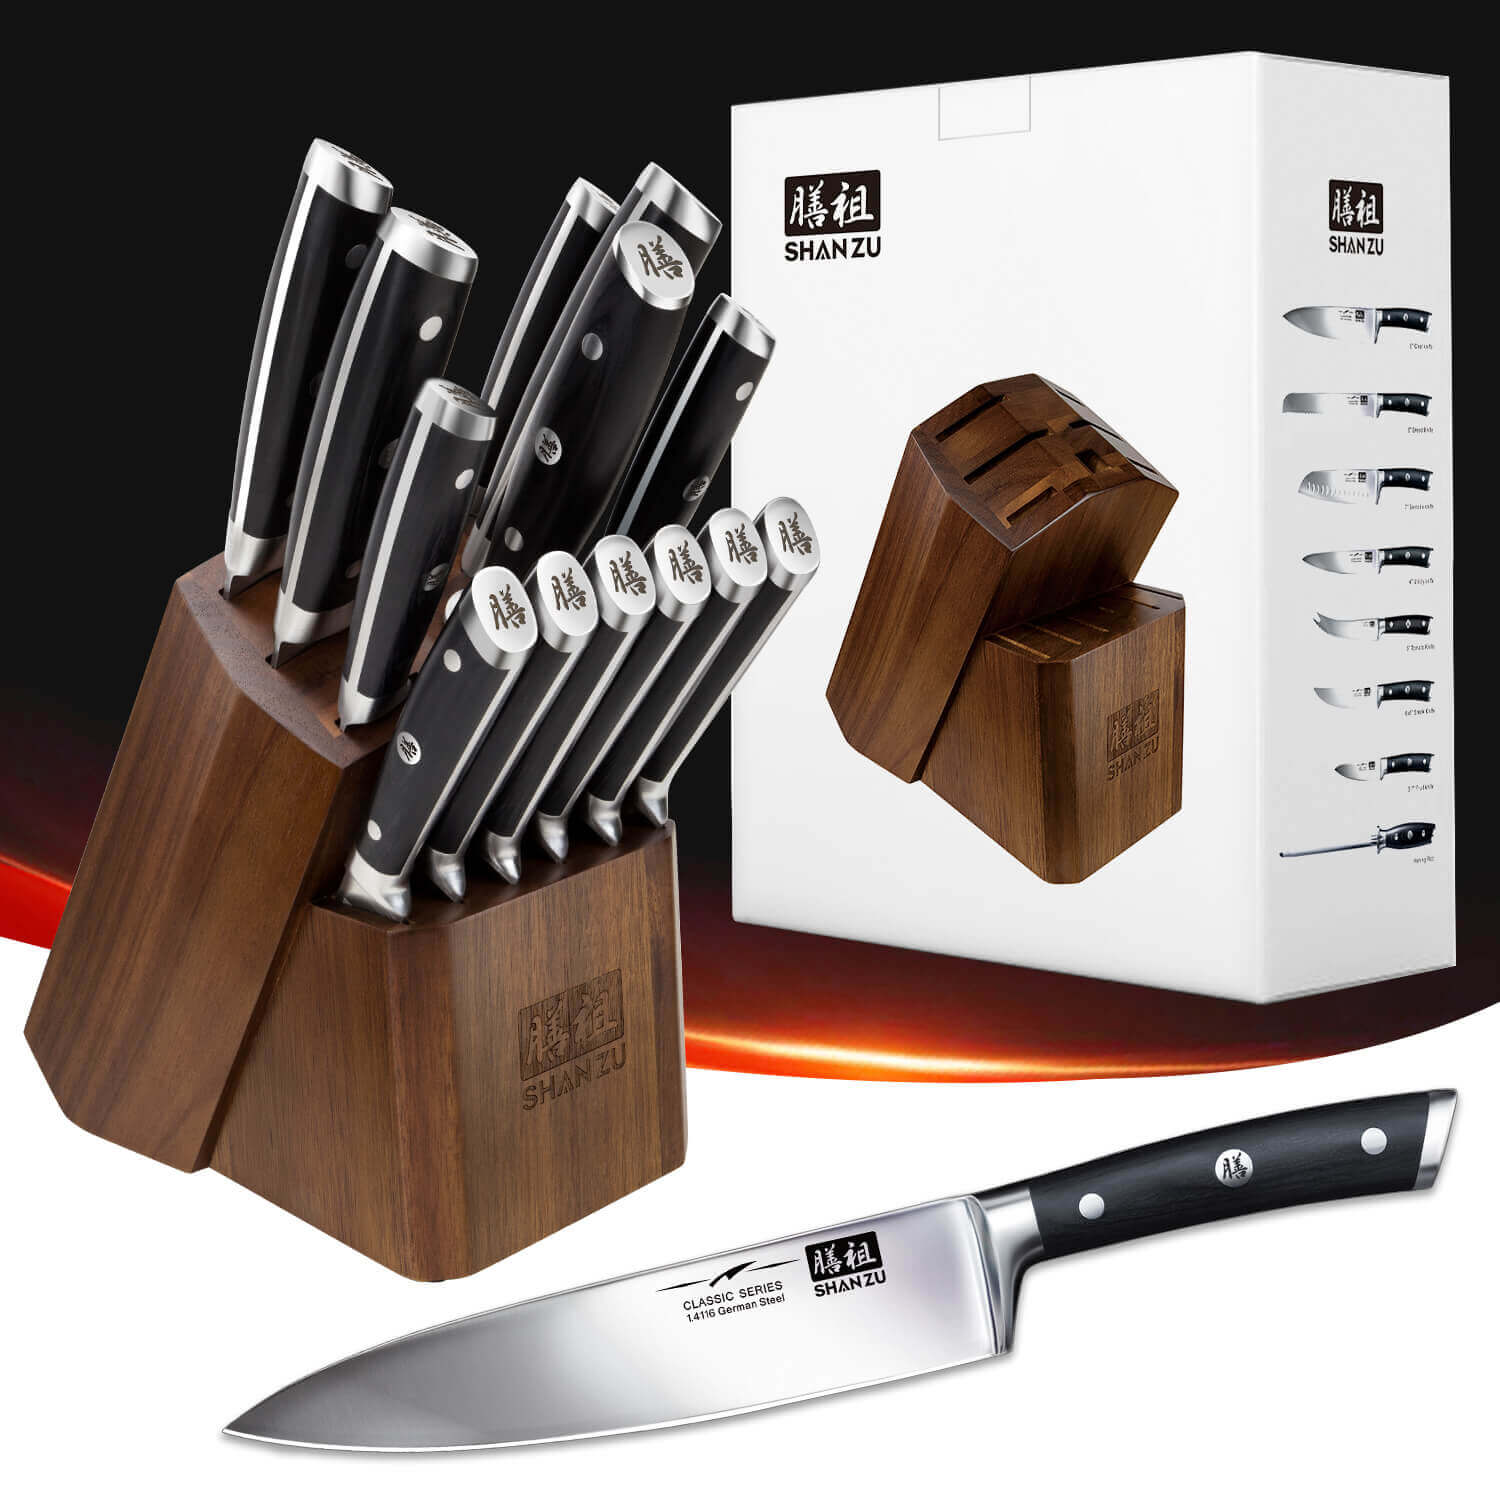 BASILISHOP - Ceppo Componibile 7 coltelli da cucina + 8 coltelli